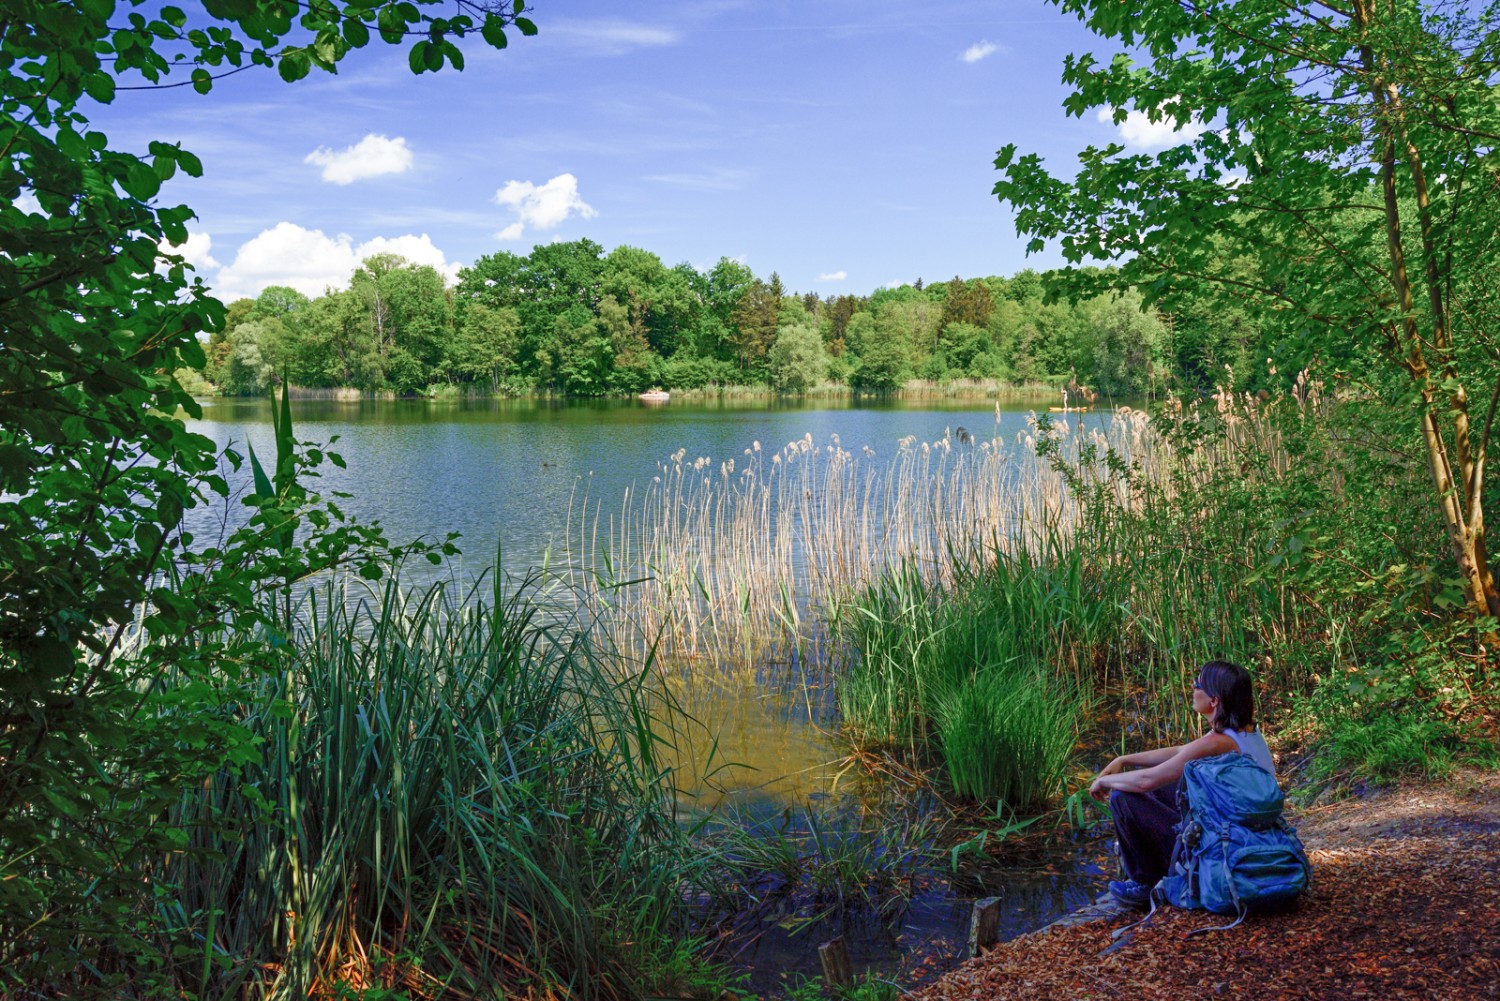 Le lac de Burgäschi est un endroit propice au repos. Photo: natur-welten.ch